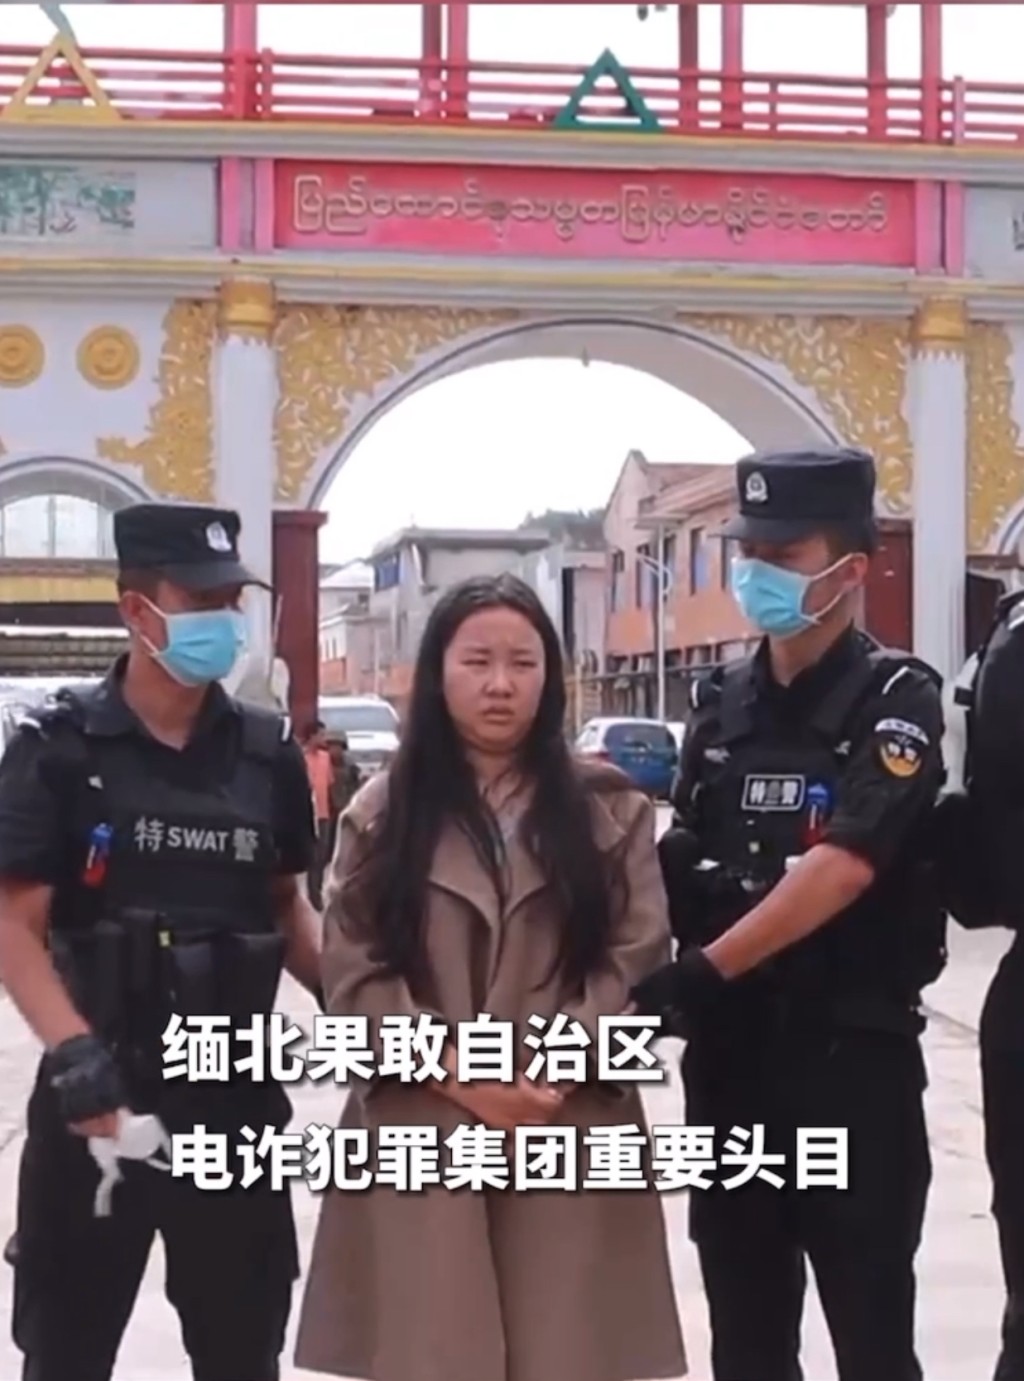 中国特警接收明珍珍。 央视影片截图